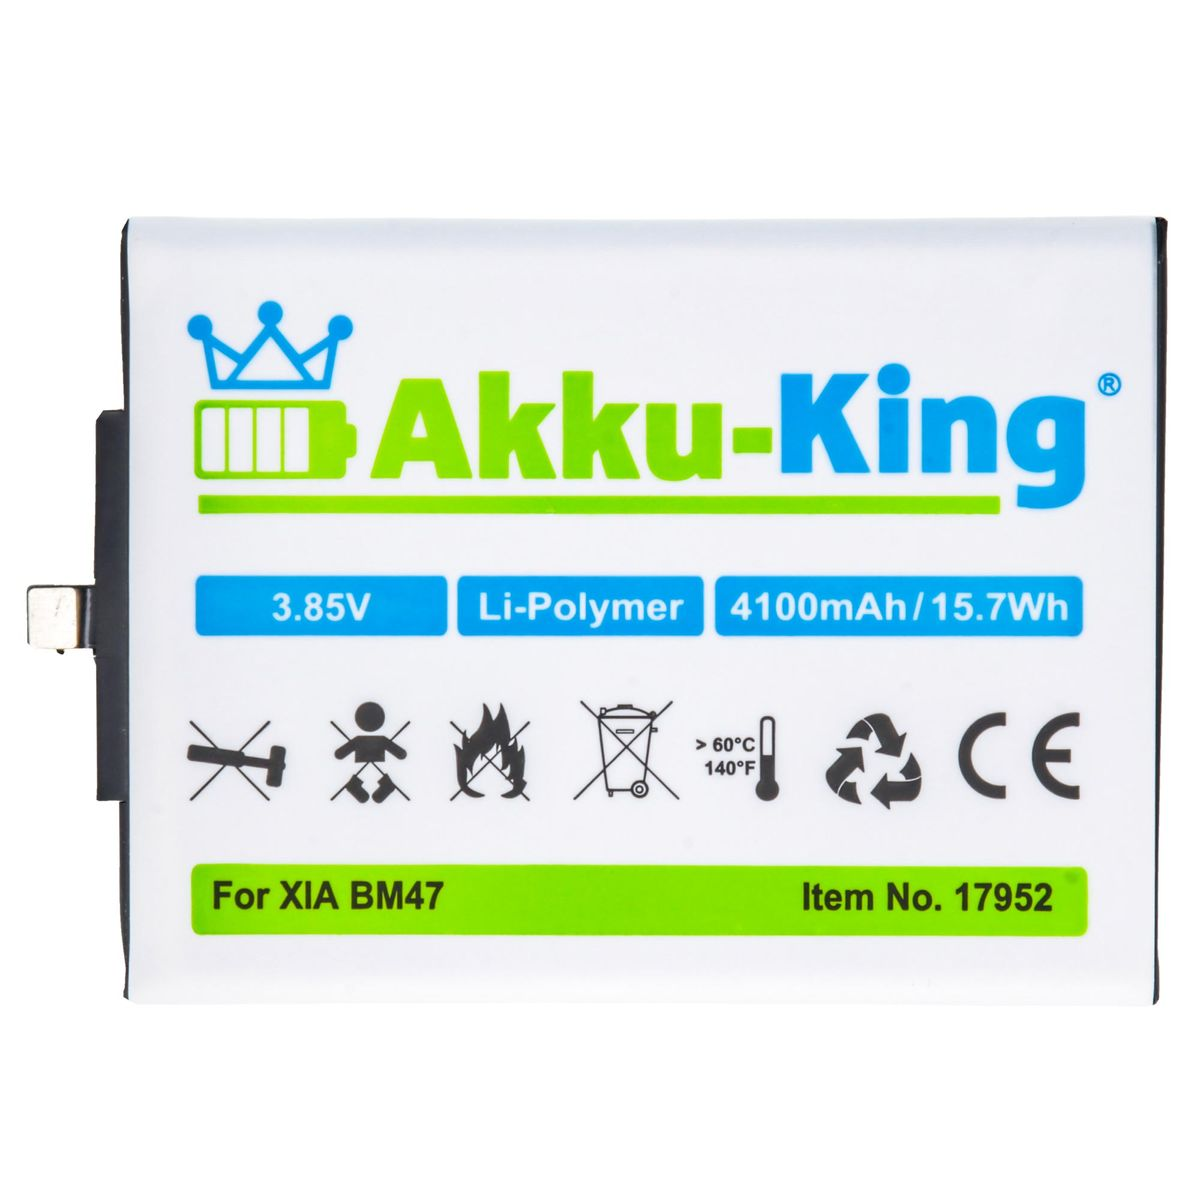 AKKU-KING Akku kompatibel BM47 3.85 Xiaomi Volt, mit Handy-Akku, 4100mAh Li-Polymer